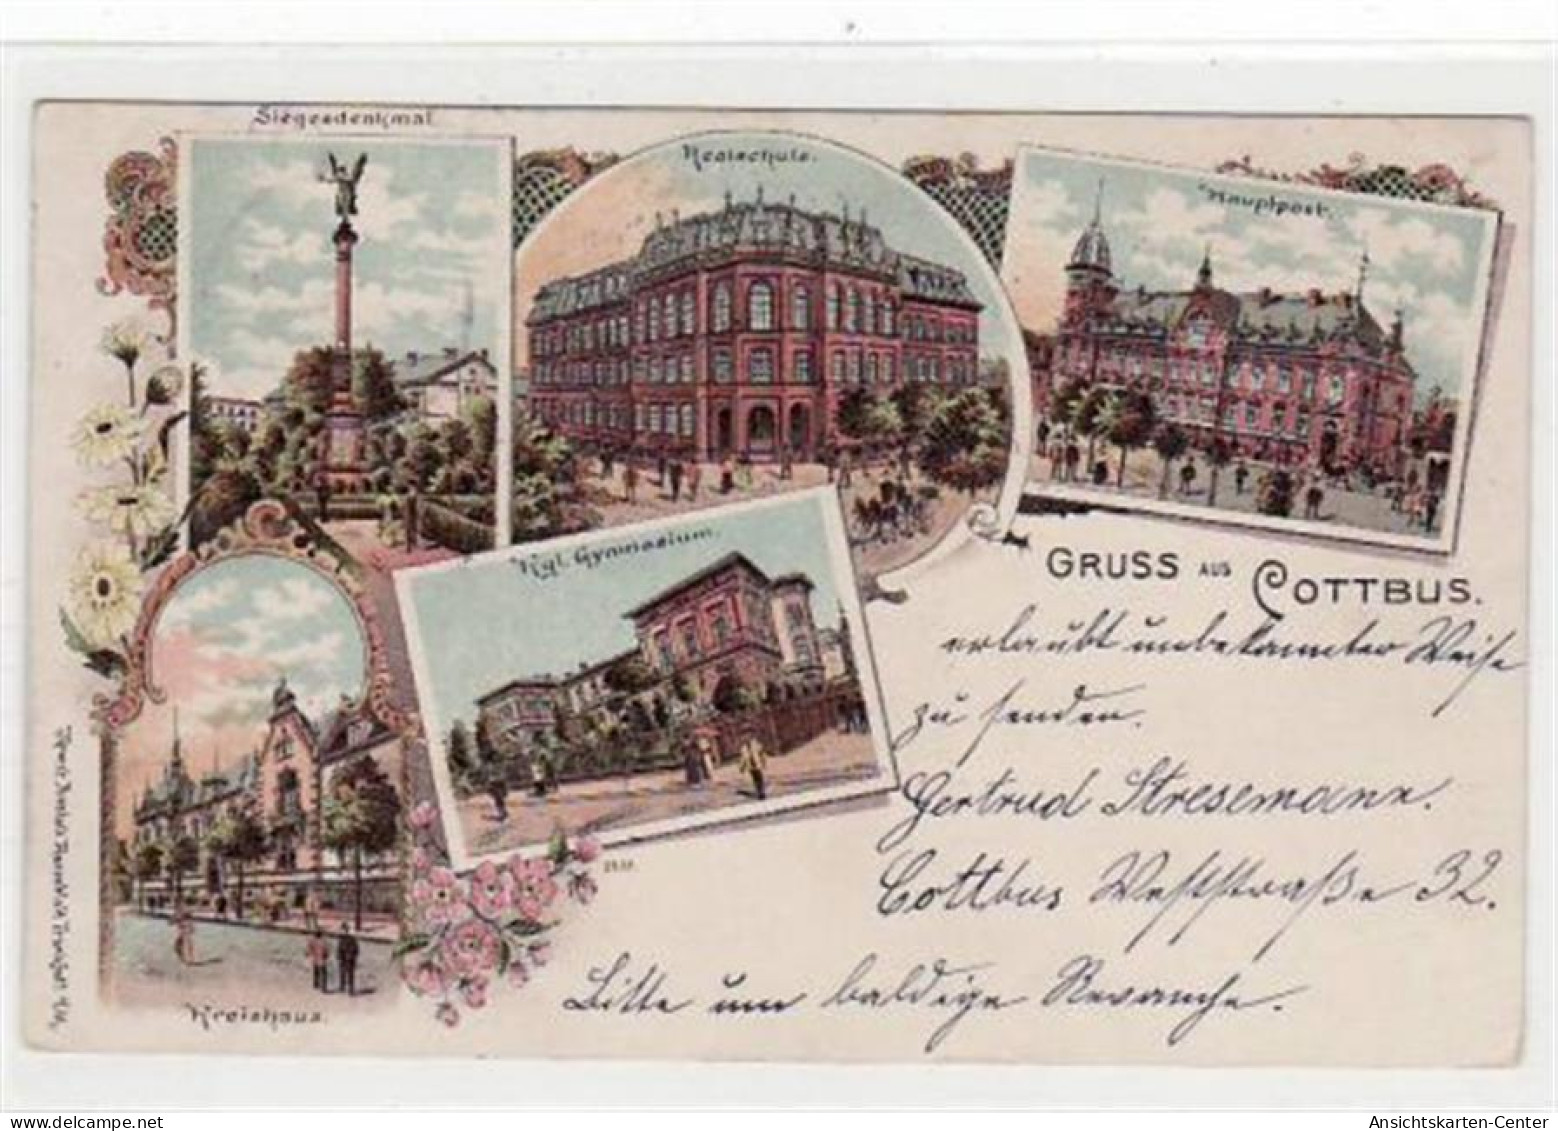 39021306 - Cottbus, Lithographie Mit Realschule, Gymnasium, Siegesdenkmal, Kreishaus Und Hauptpost Gelaufen Von 1899. G - Cottbus